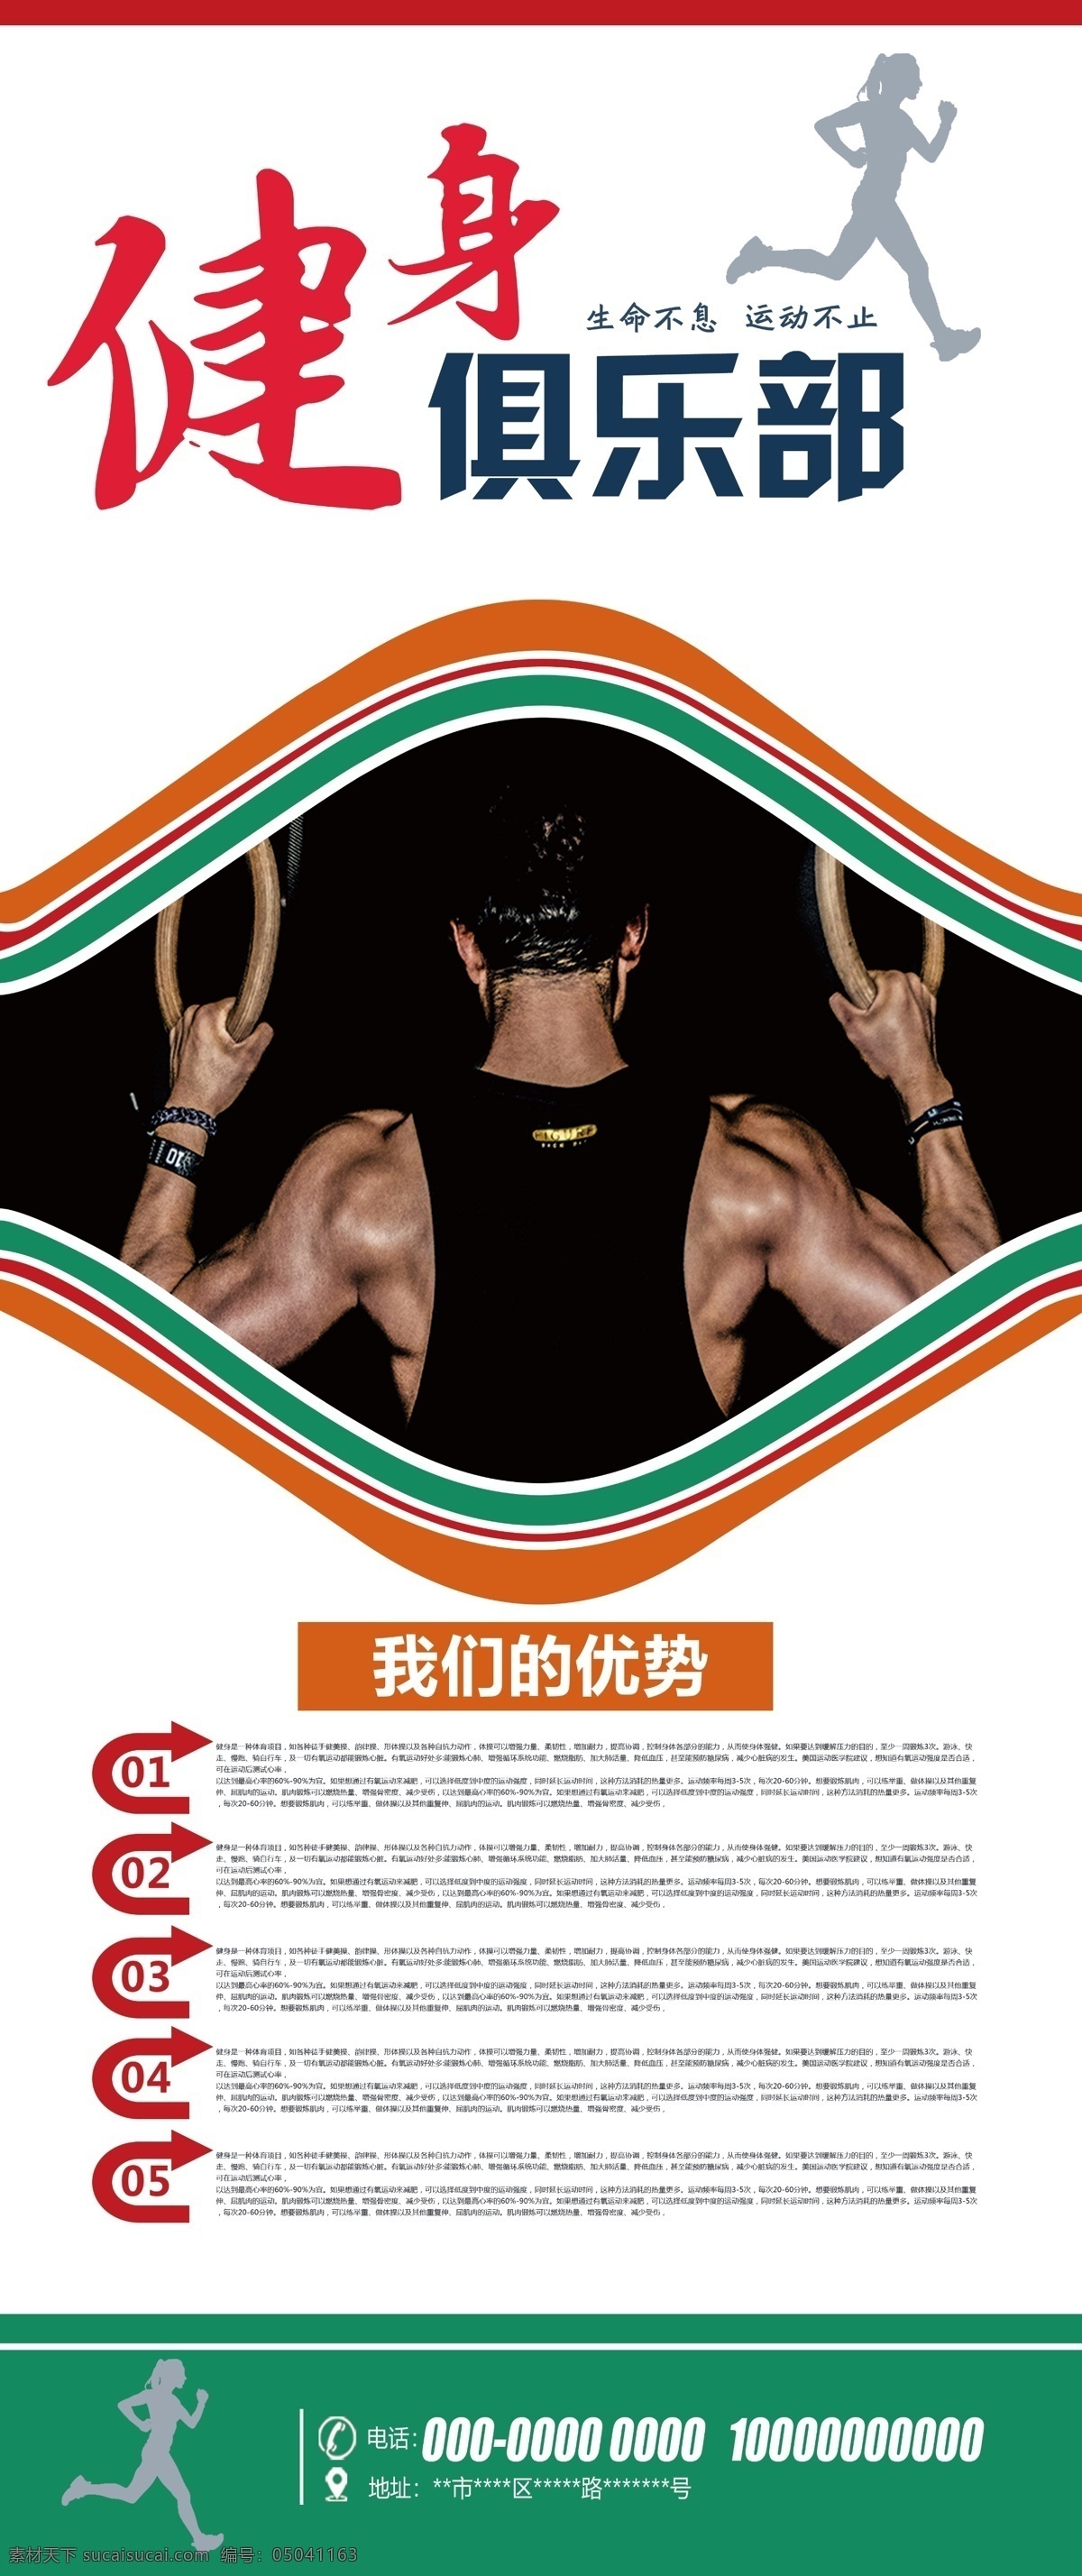 健身 俱乐部 健身俱乐部 健身海报 健身房海报 运动健身 吊环健身 分层